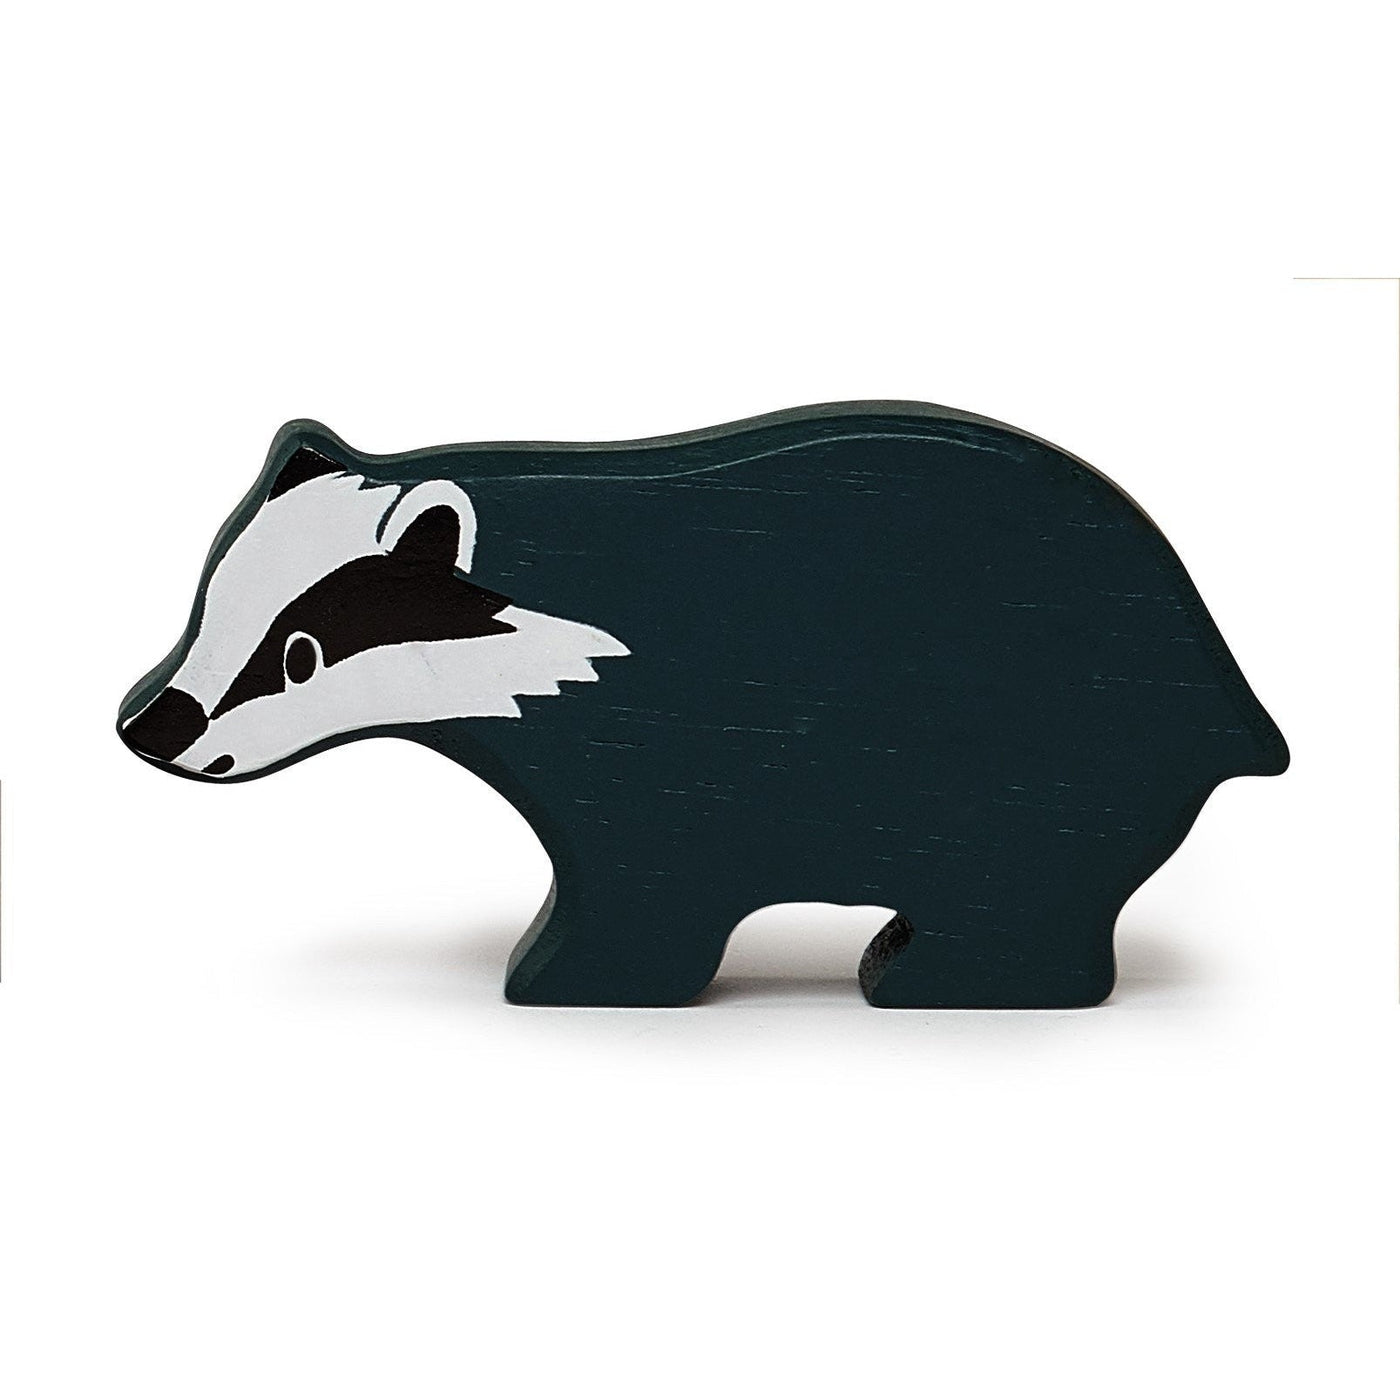 Tender Leaf Toys Woodland Animal - Badger